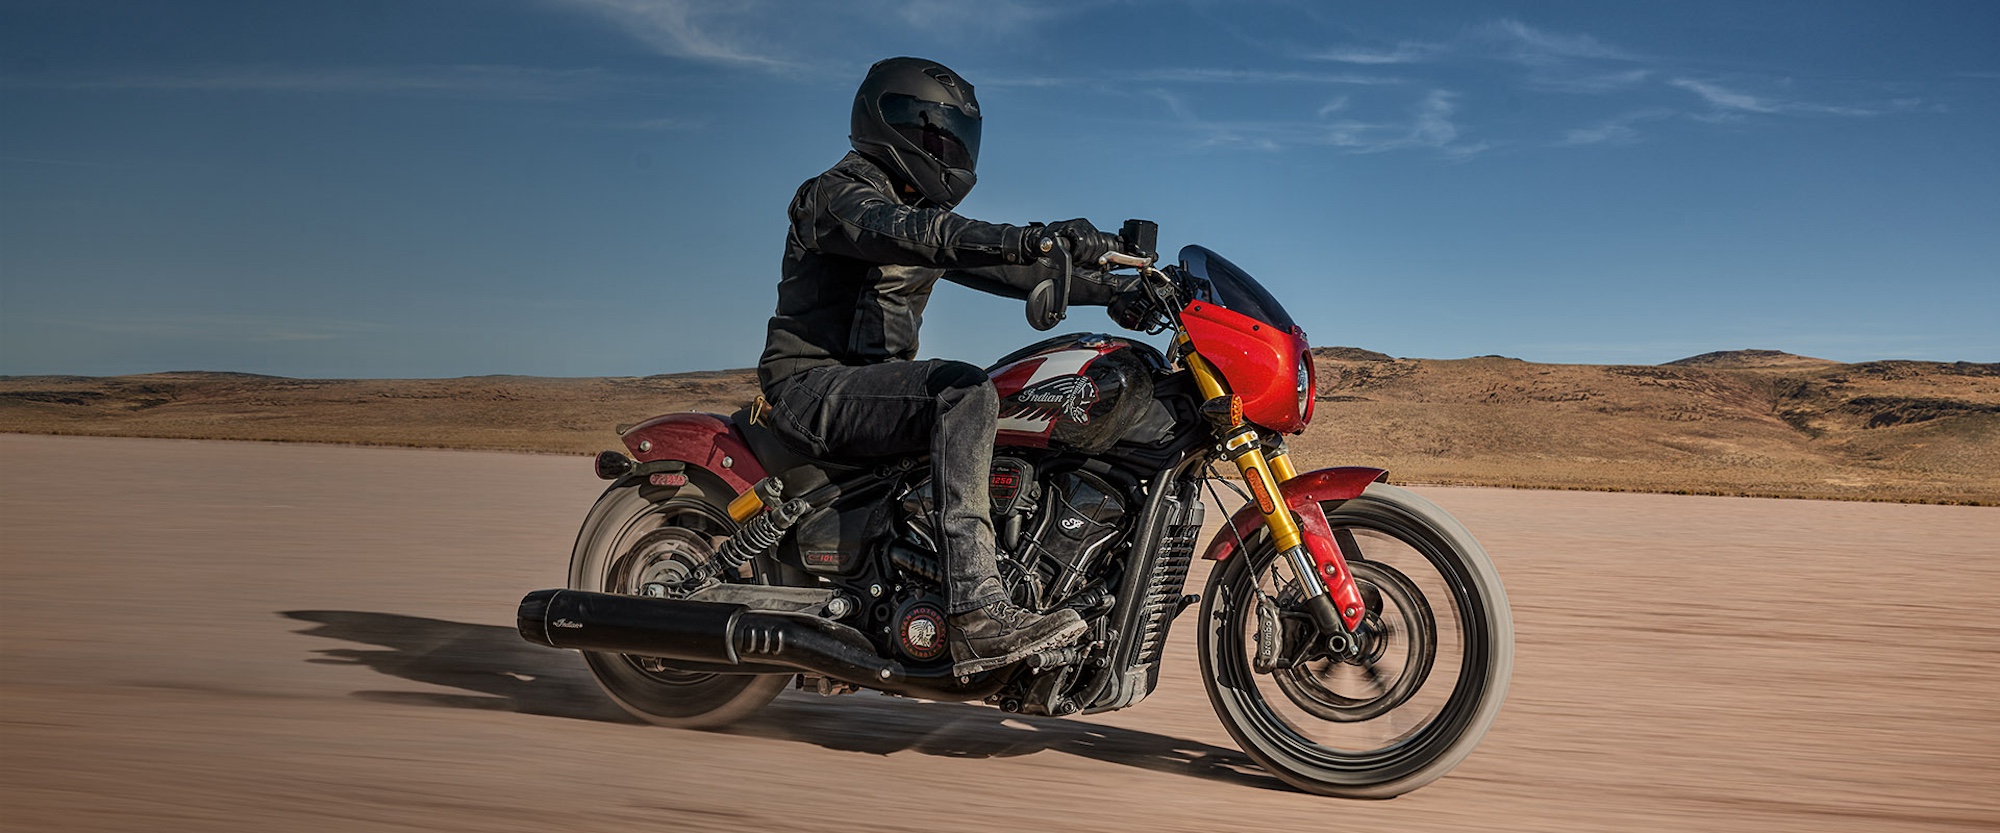 Un homme sur une moto dans le désert.